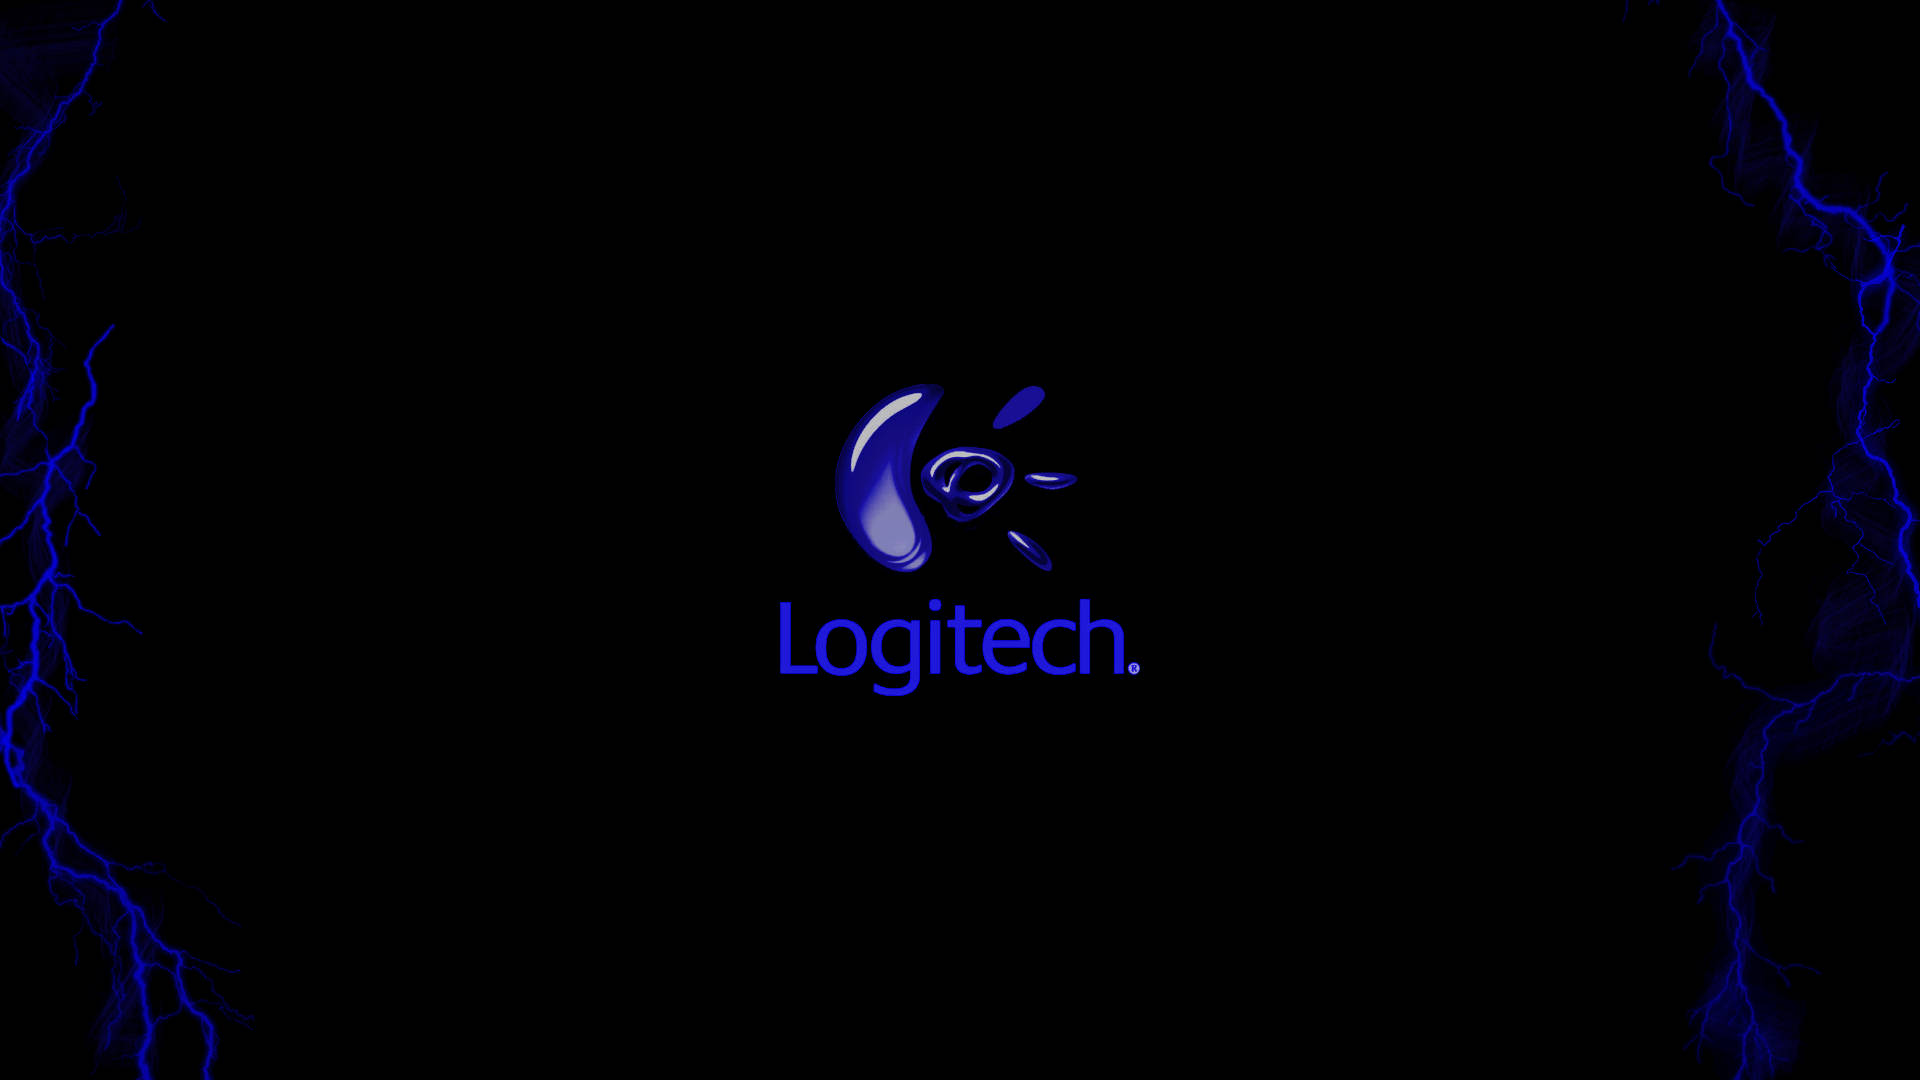 Logitech 1080P, 2K, 4K, 5K HD wallpapers free download | Wallpaper Flare